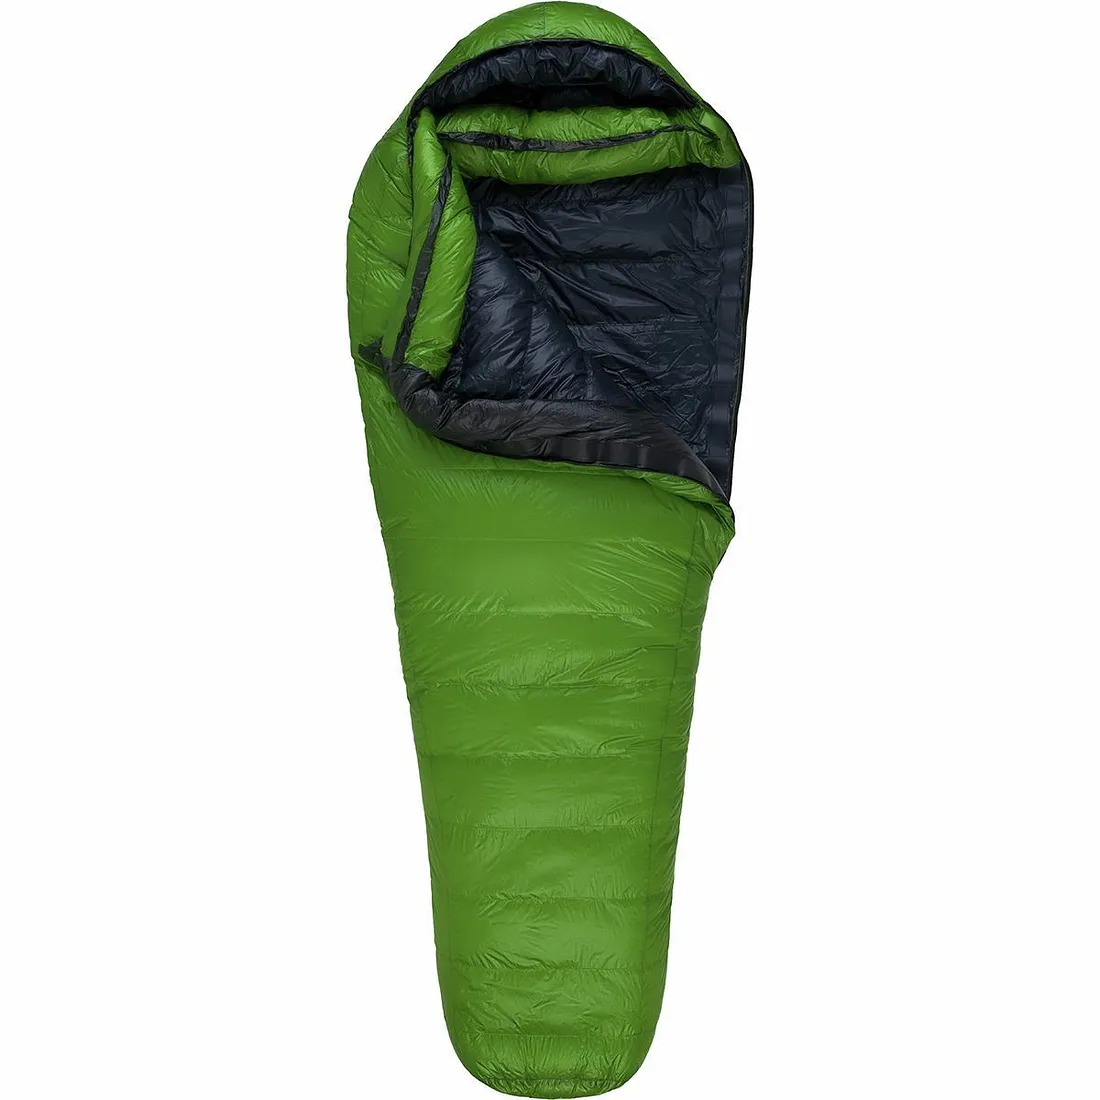 Western Mountaineering Versalite Winter Sleeping Bag